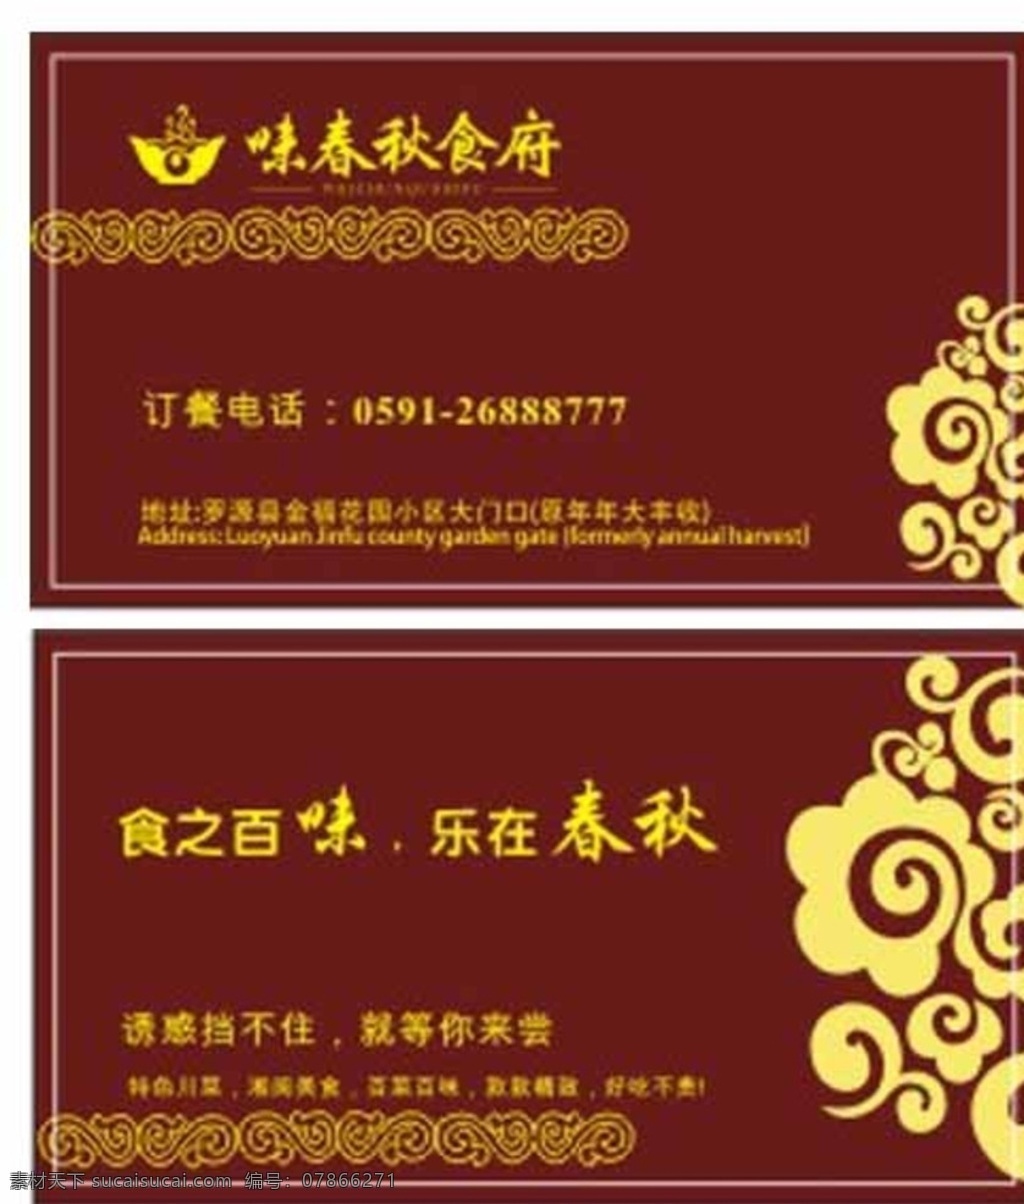 中式 餐饮 祥云 名片设计 传统 中国风 中式餐厅 名片 模板 名片卡片